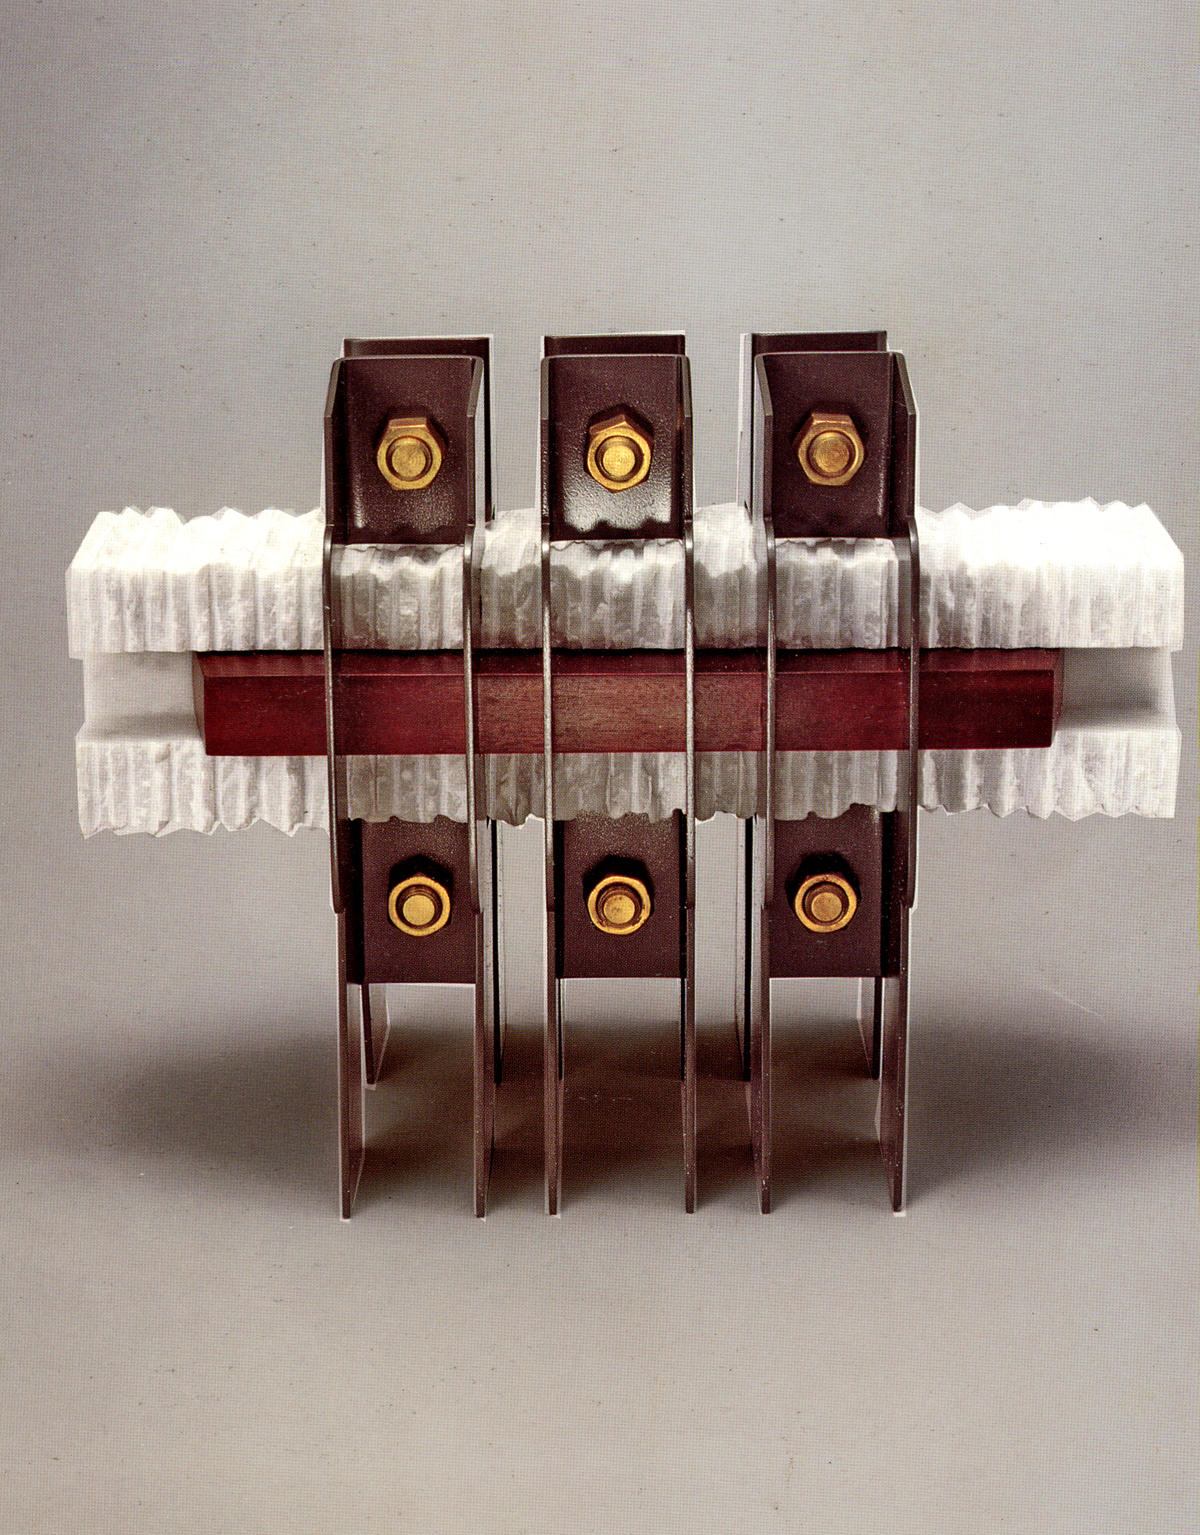 S/T. De la serie Sujetadores. 1997. Aluminio, mármol y madera